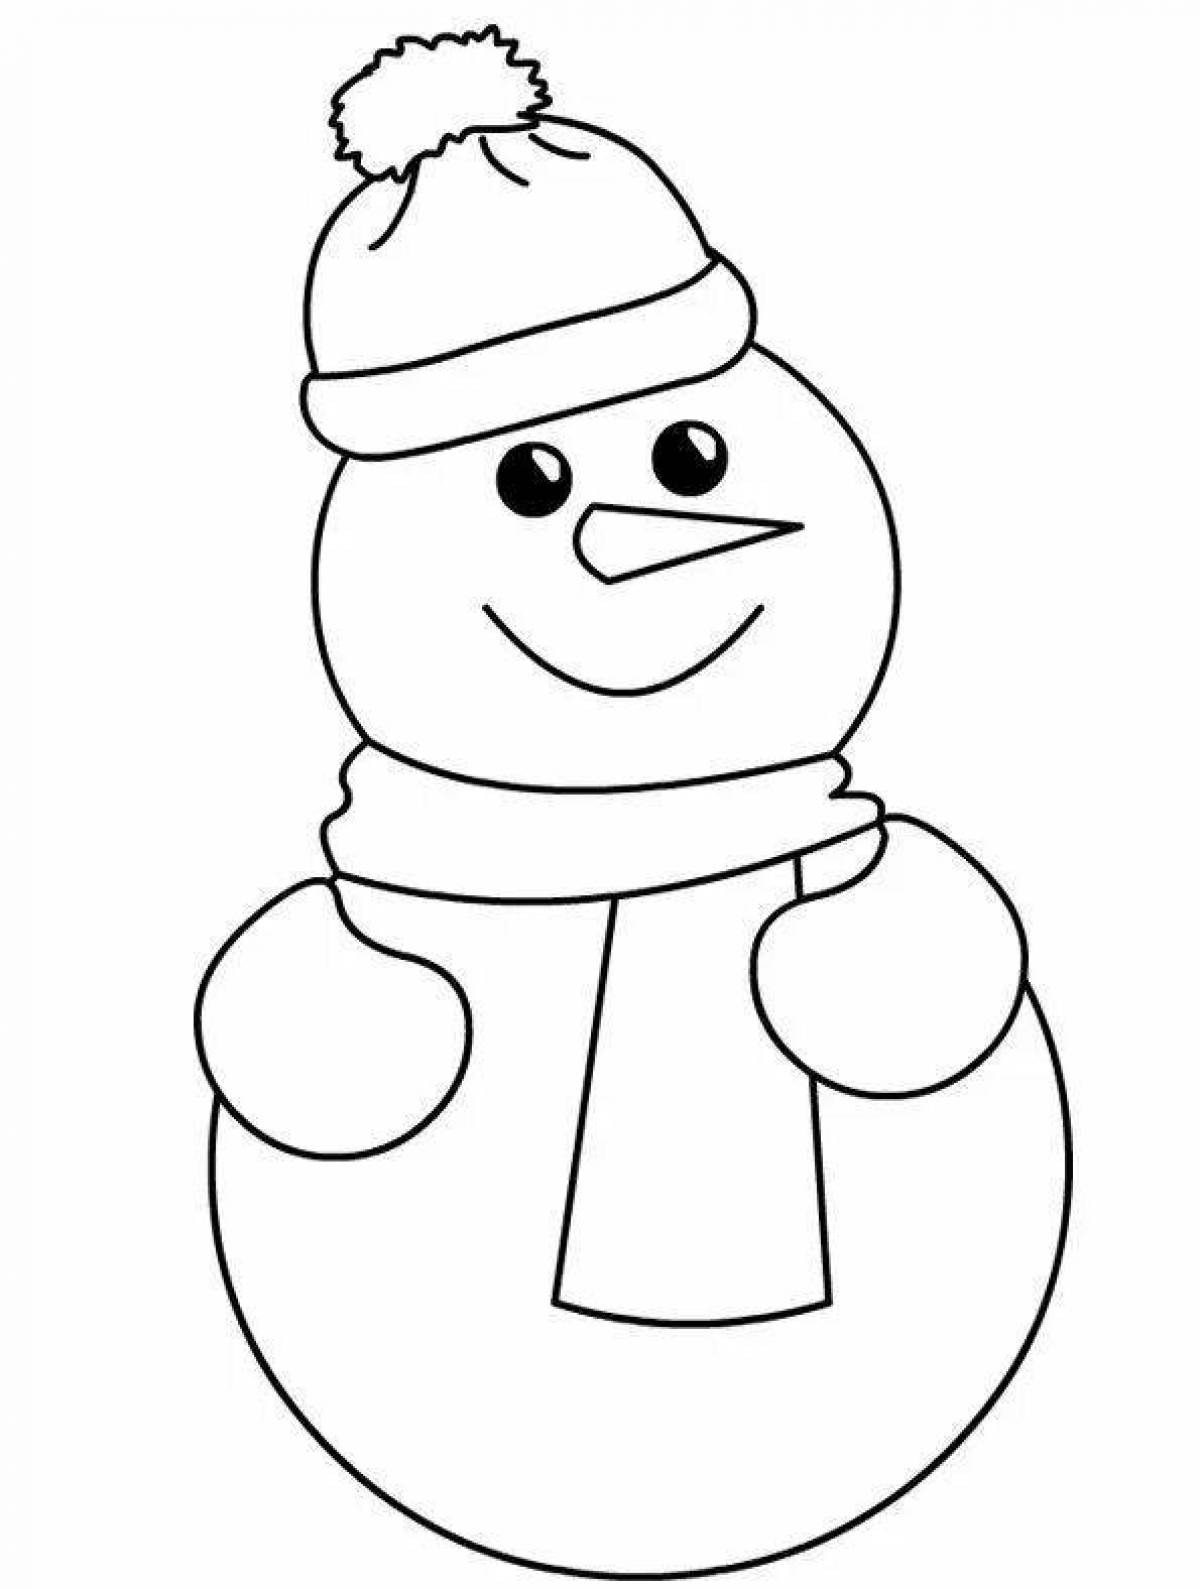 Безумная раскраска снеговик для детей 2-3 лет